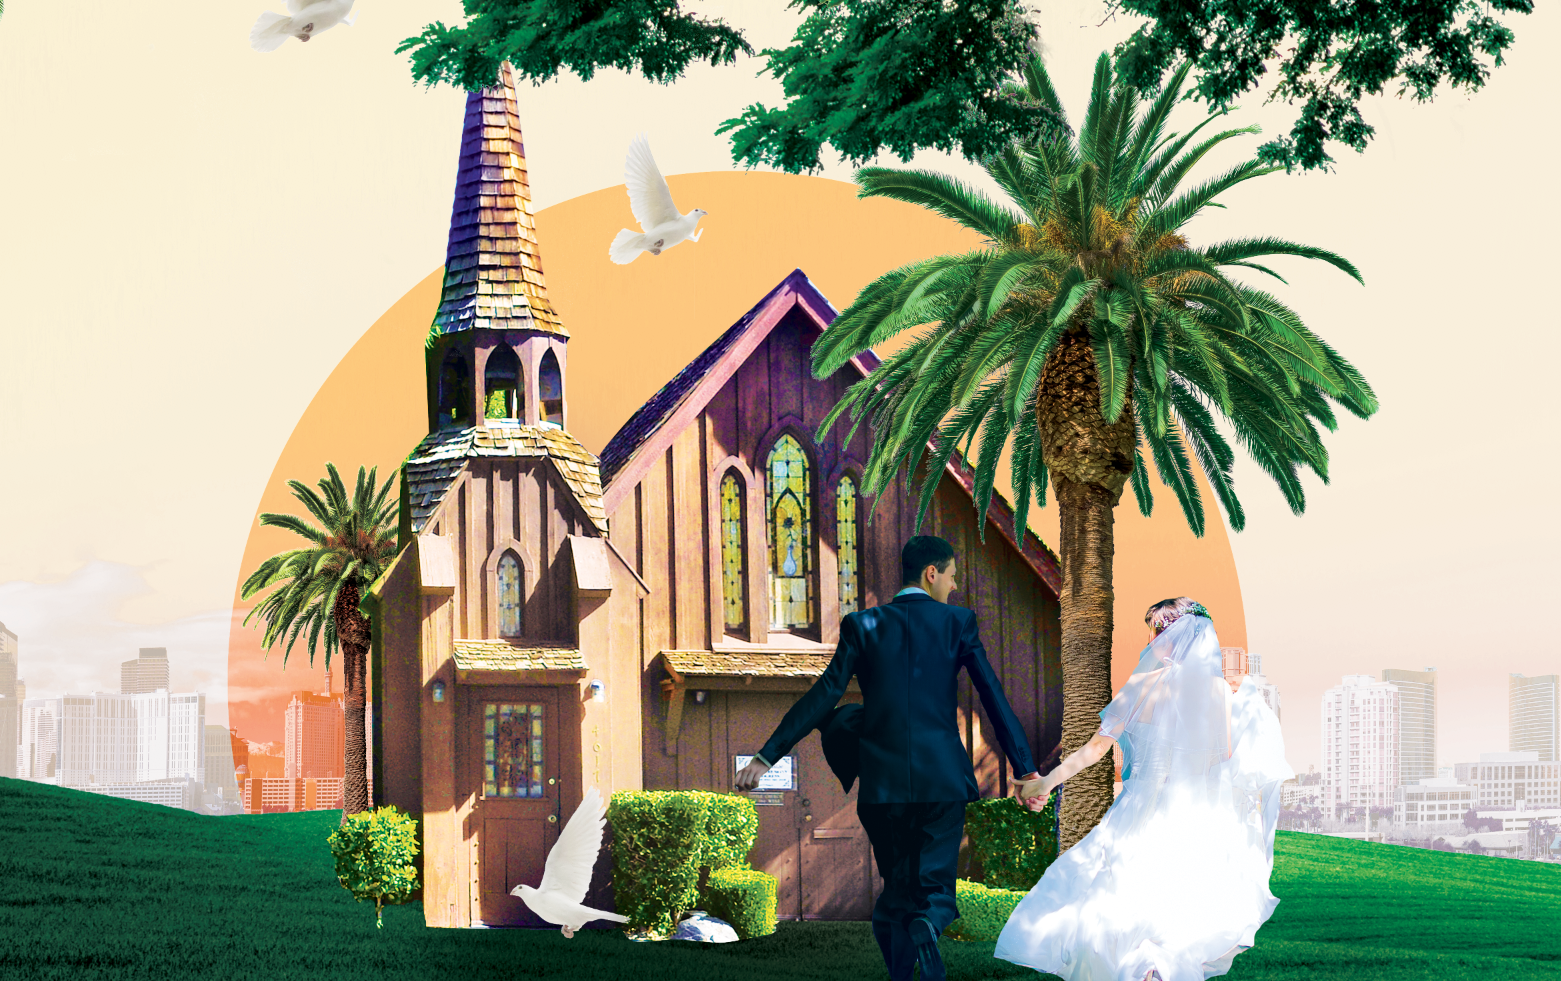 Las Vegas Sign Weddings 2021 - Las Vegas Elvis Wedding Chapel Best